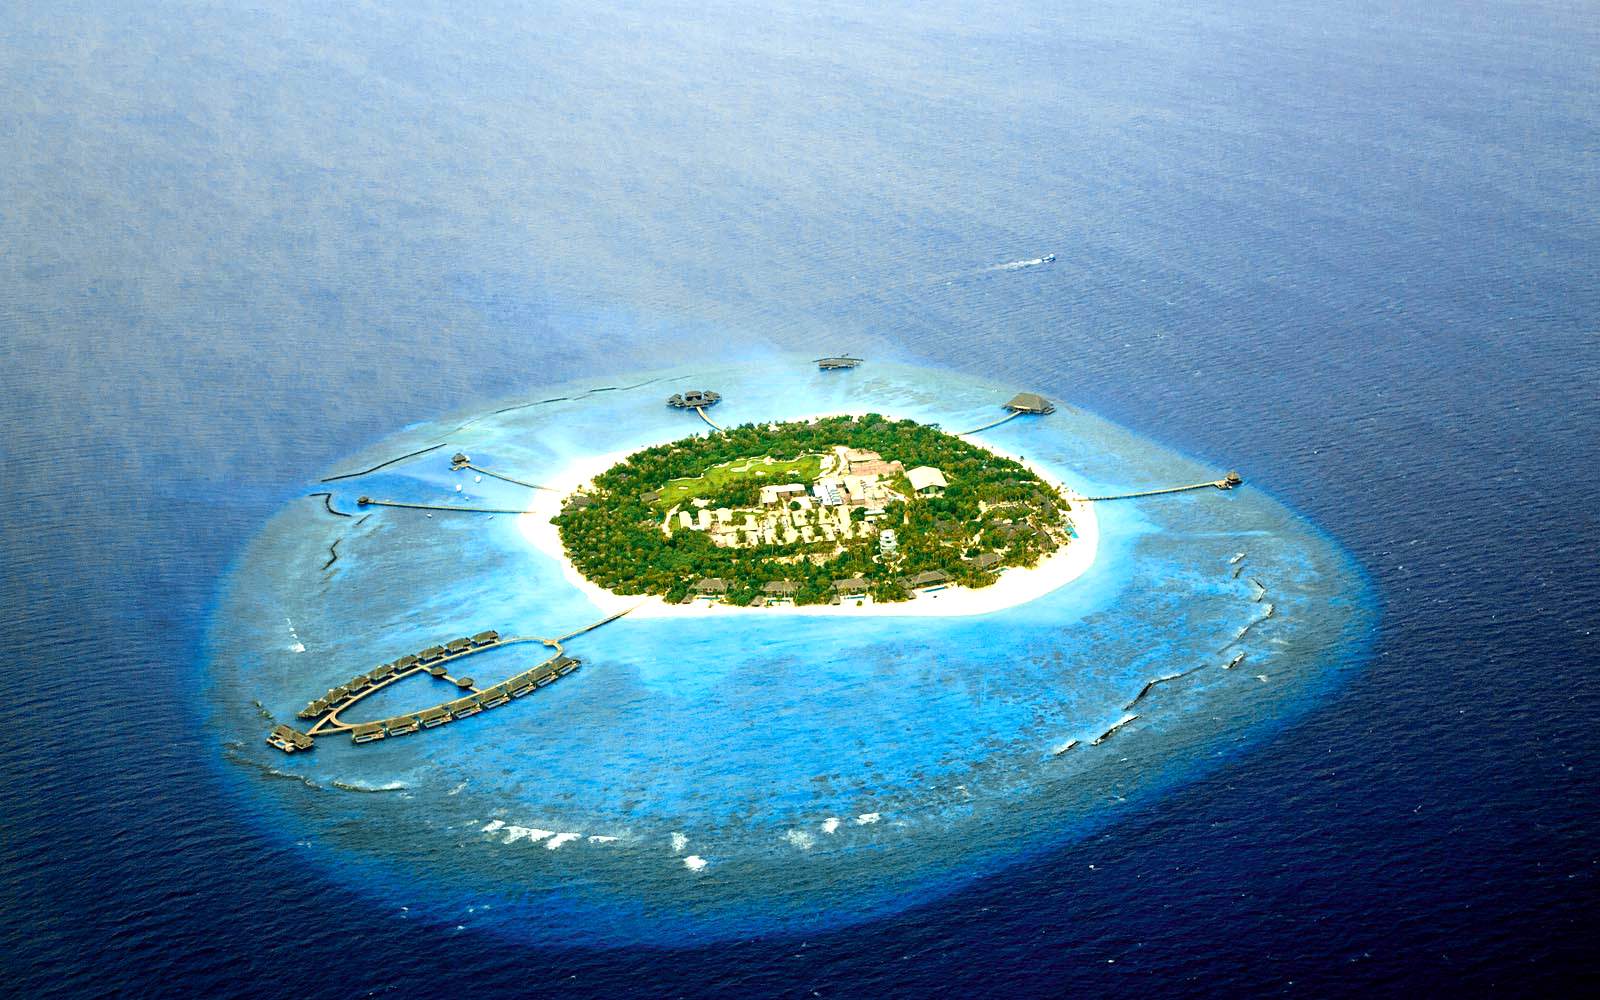  维拉私人岛 Velaa Private Island 鸟瞰地图birdview map清晰版 马尔代夫